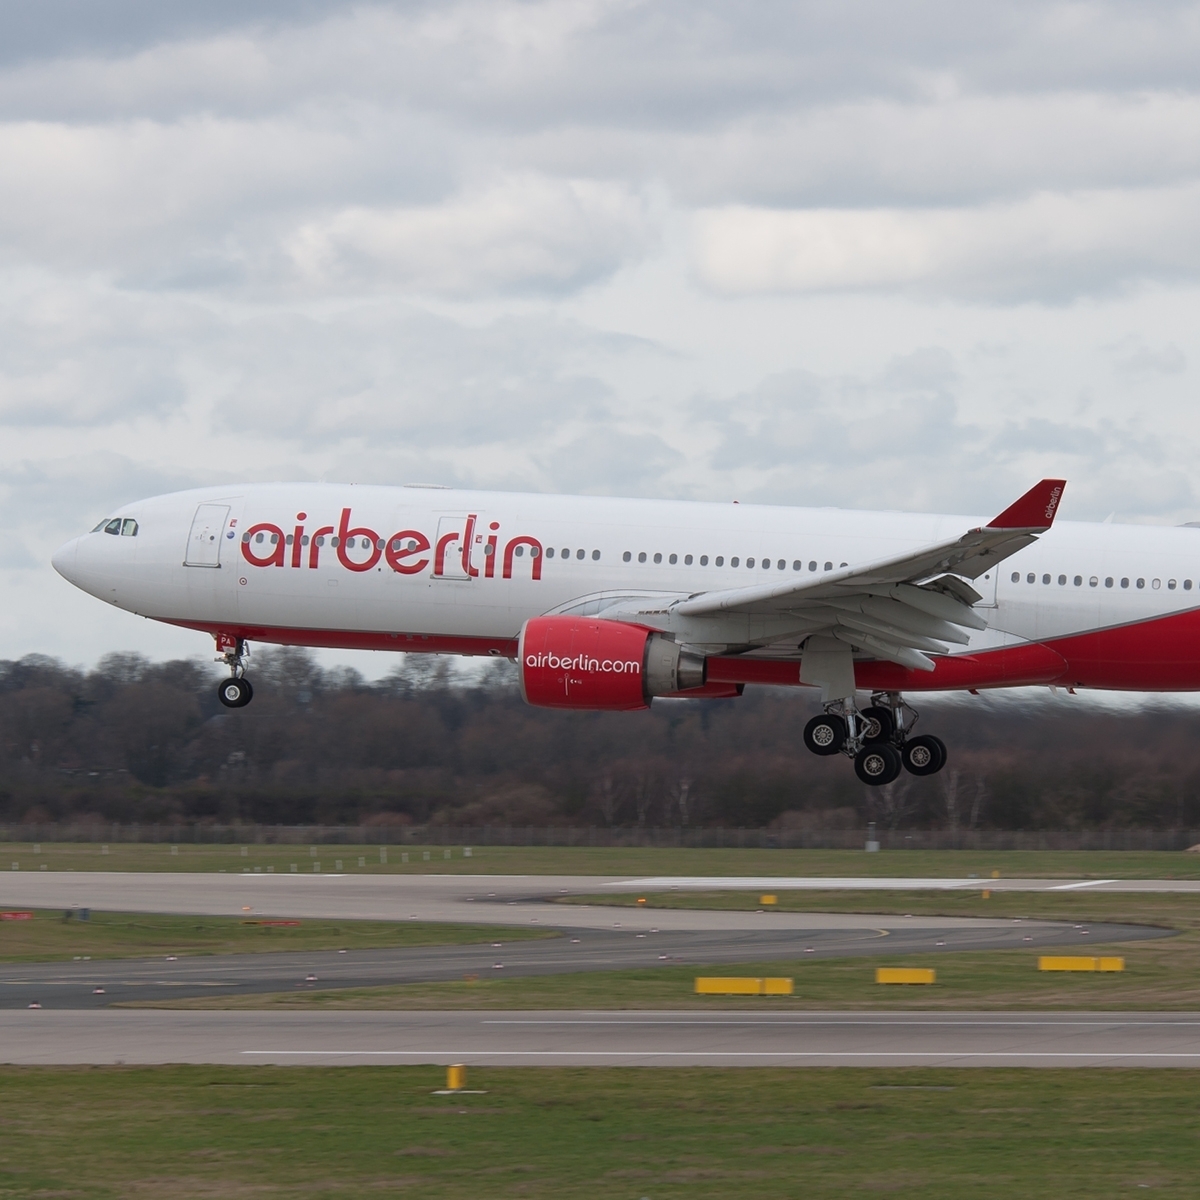 Aviationtag Virgin Atlantic - Airbus A330 - G-VMNK (ex D-ALPA) Red